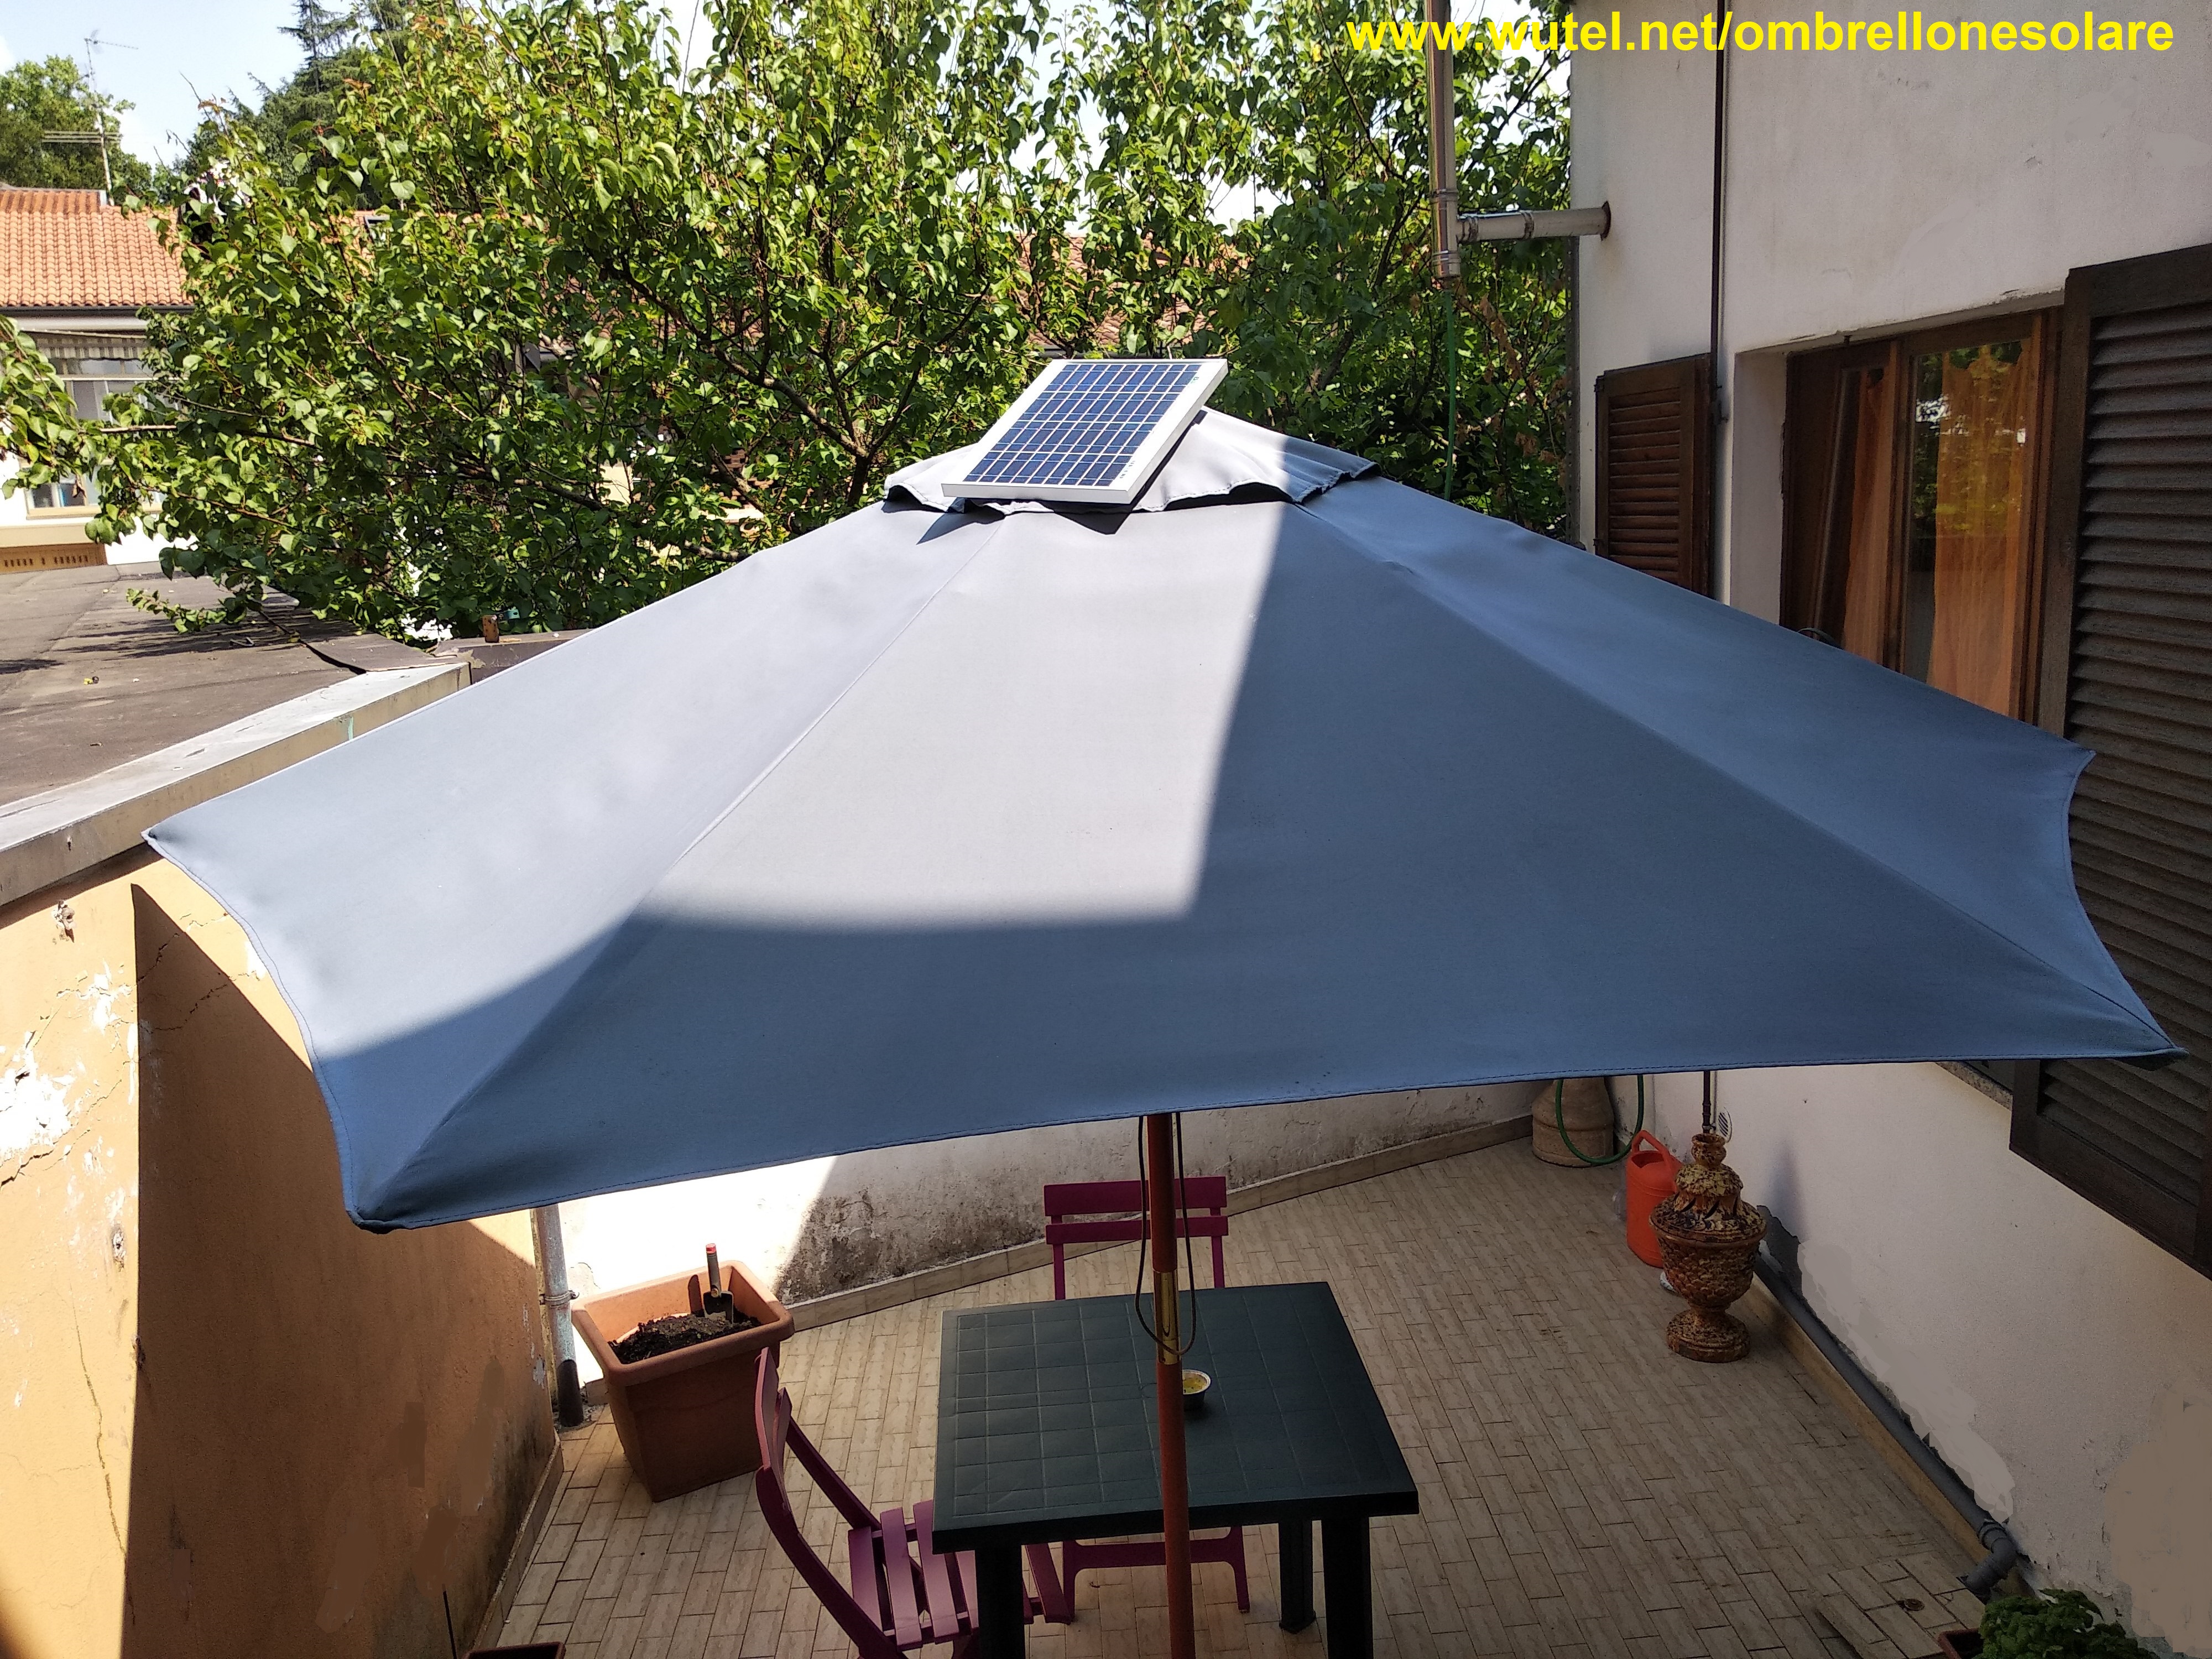 ombrellone solare fotovoltaico